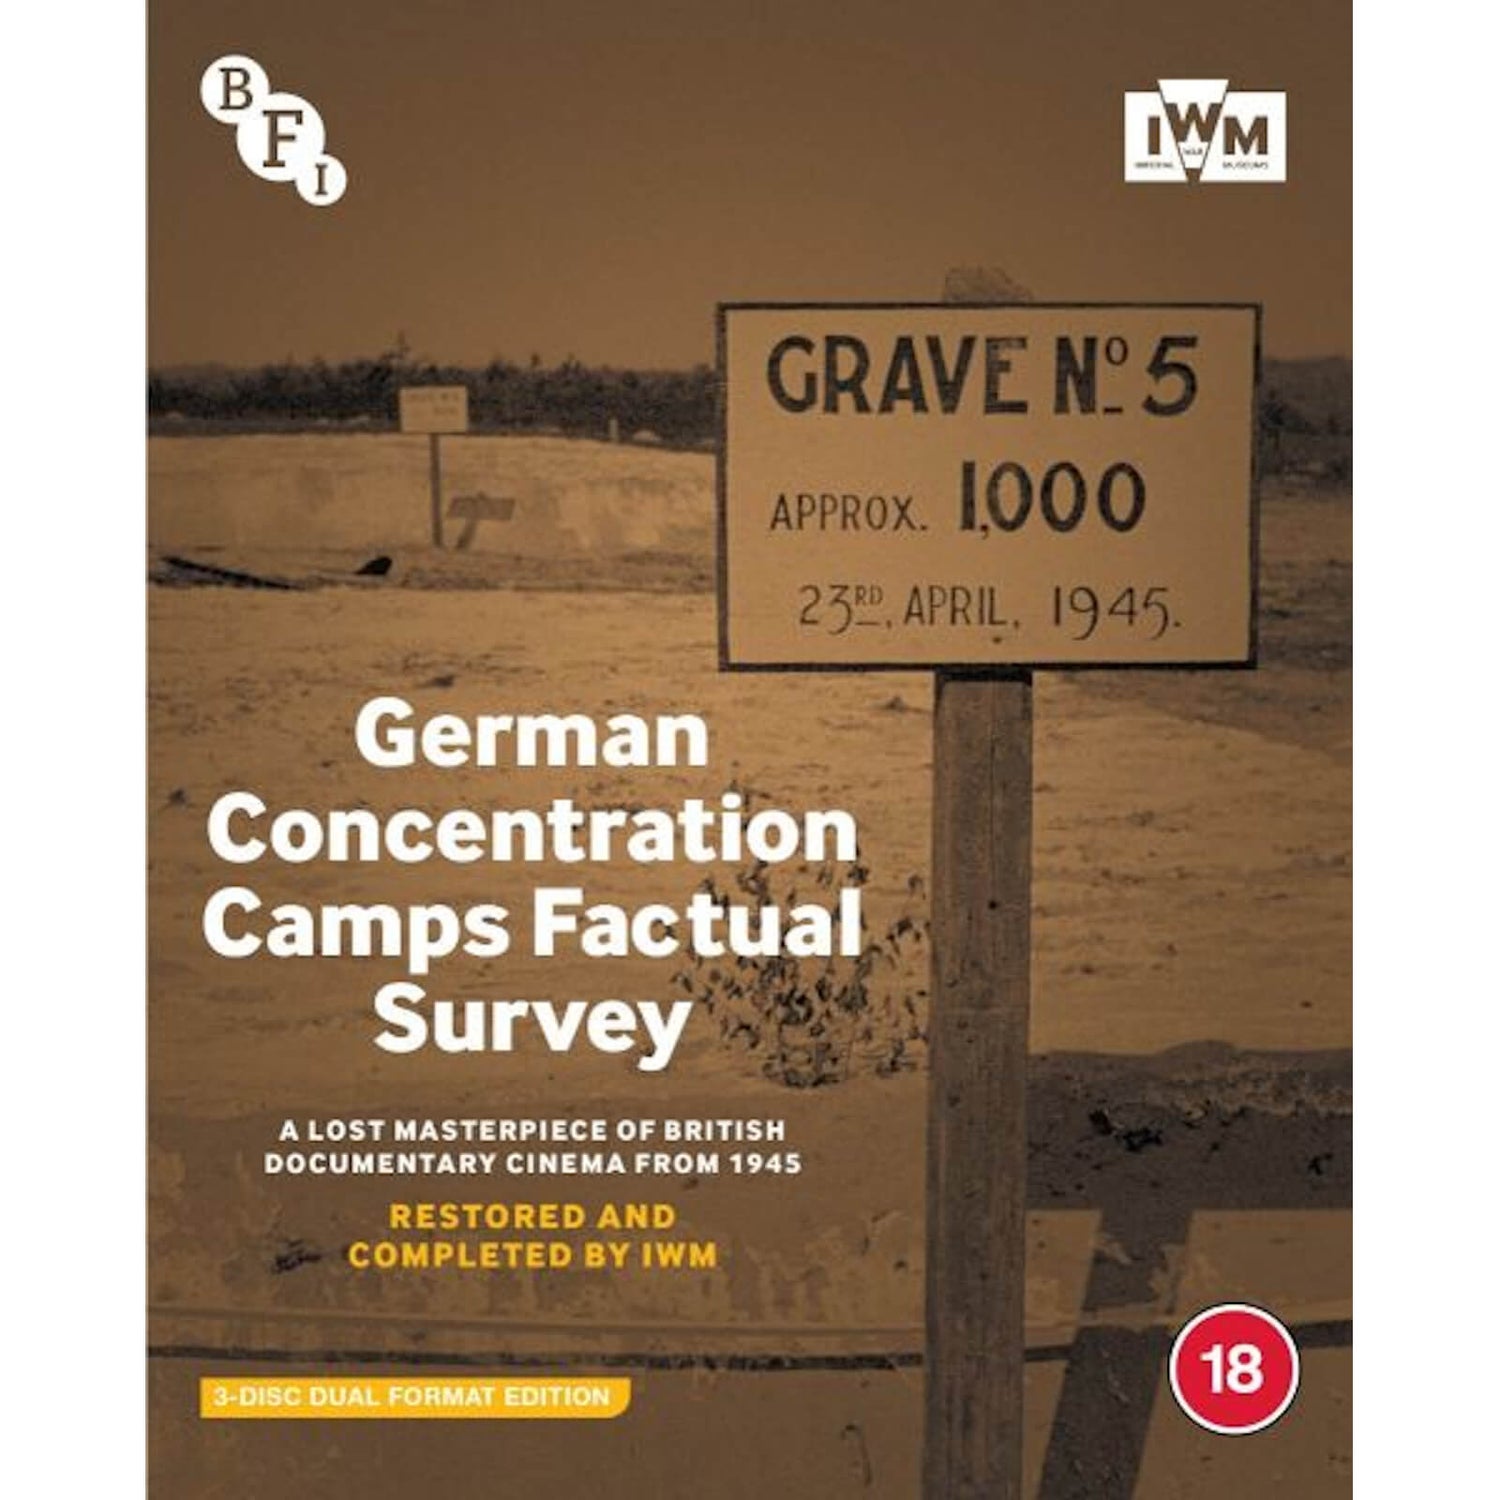 German Concentration Camps Factual Survey - Dual Format Edition